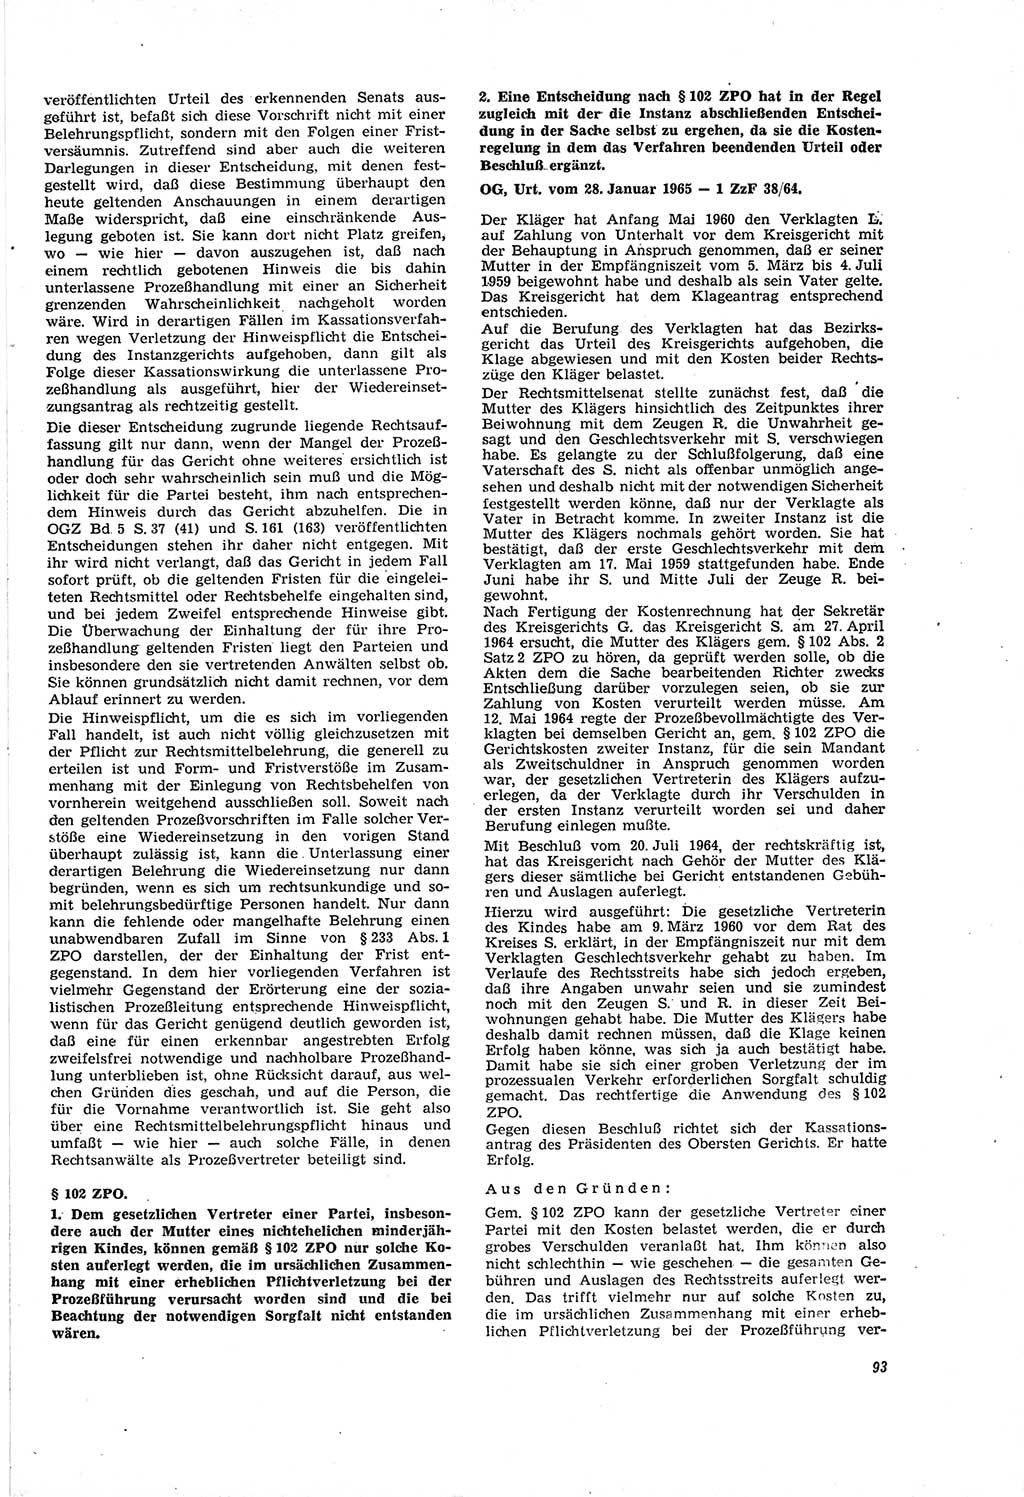 Neue Justiz (NJ), Zeitschrift für Recht und Rechtswissenschaft [Deutsche Demokratische Republik (DDR)], 20. Jahrgang 1966, Seite 93 (NJ DDR 1966, S. 93)